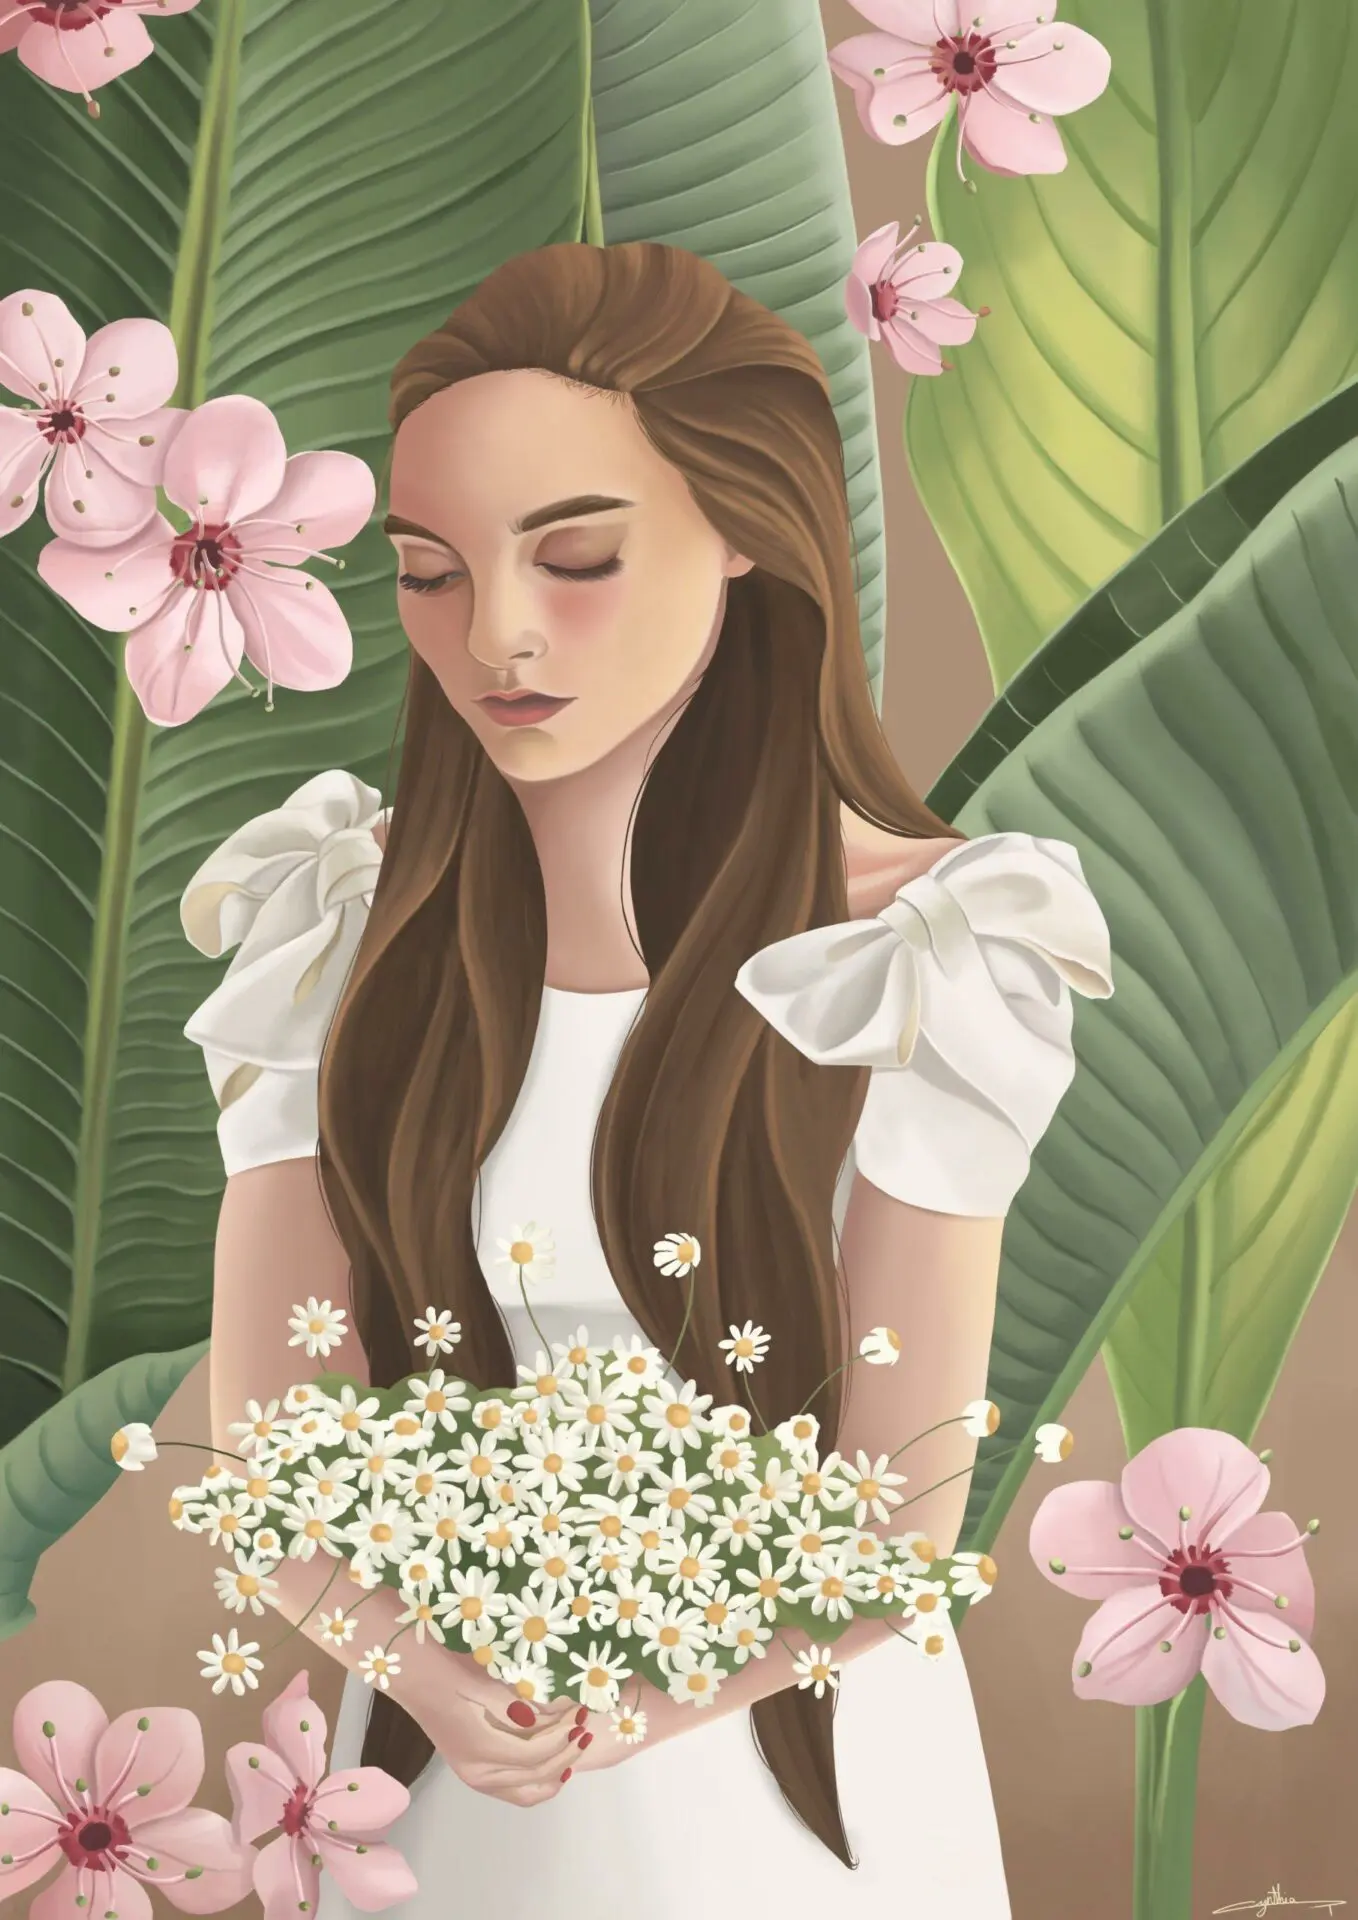 dessin femme, plantes et fleurs fait par l’illustratrice Cynthia Artstudio